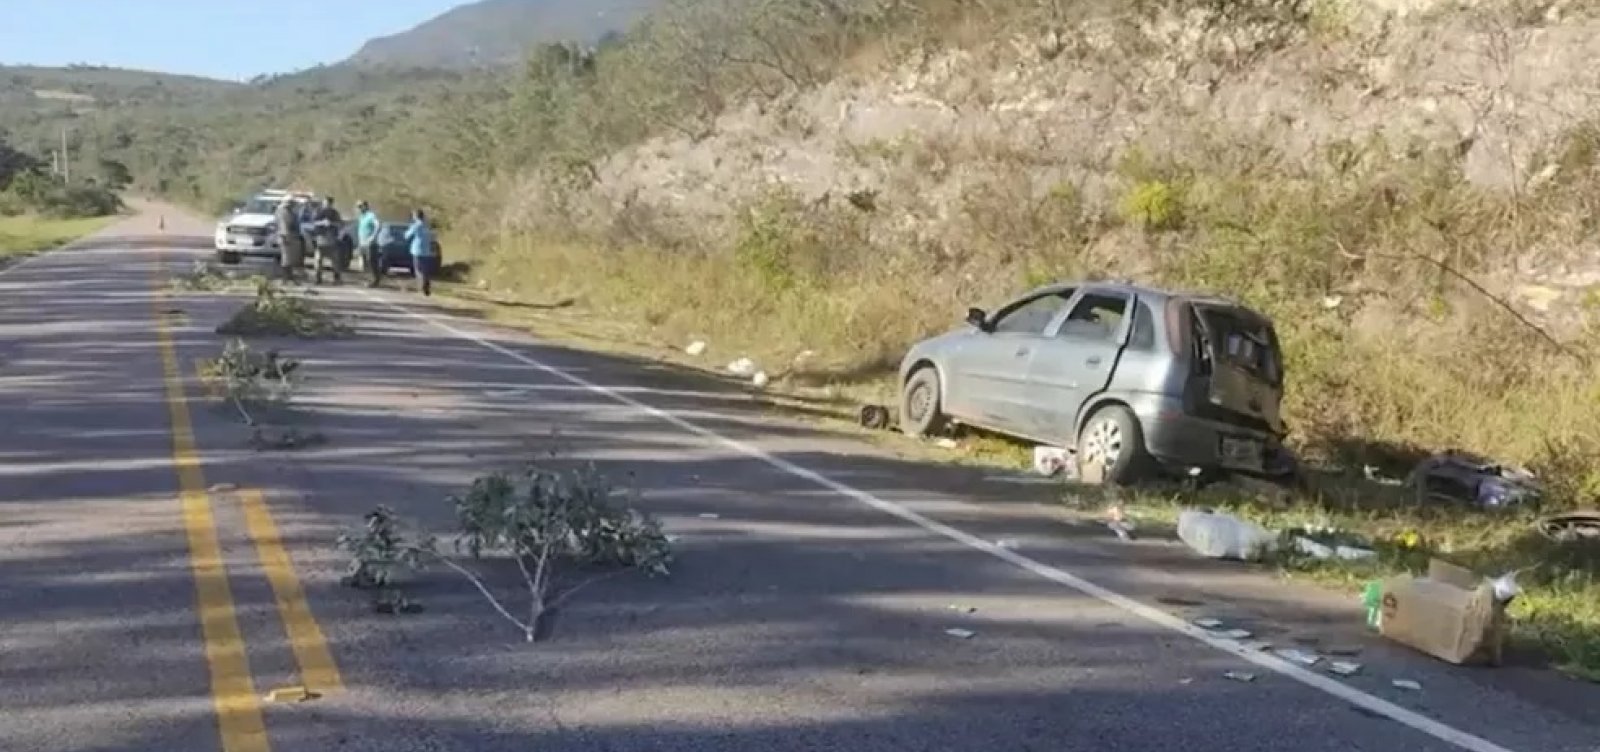 Três pessoas morrem após batida entre carro e moto no sudoeste da Bahia